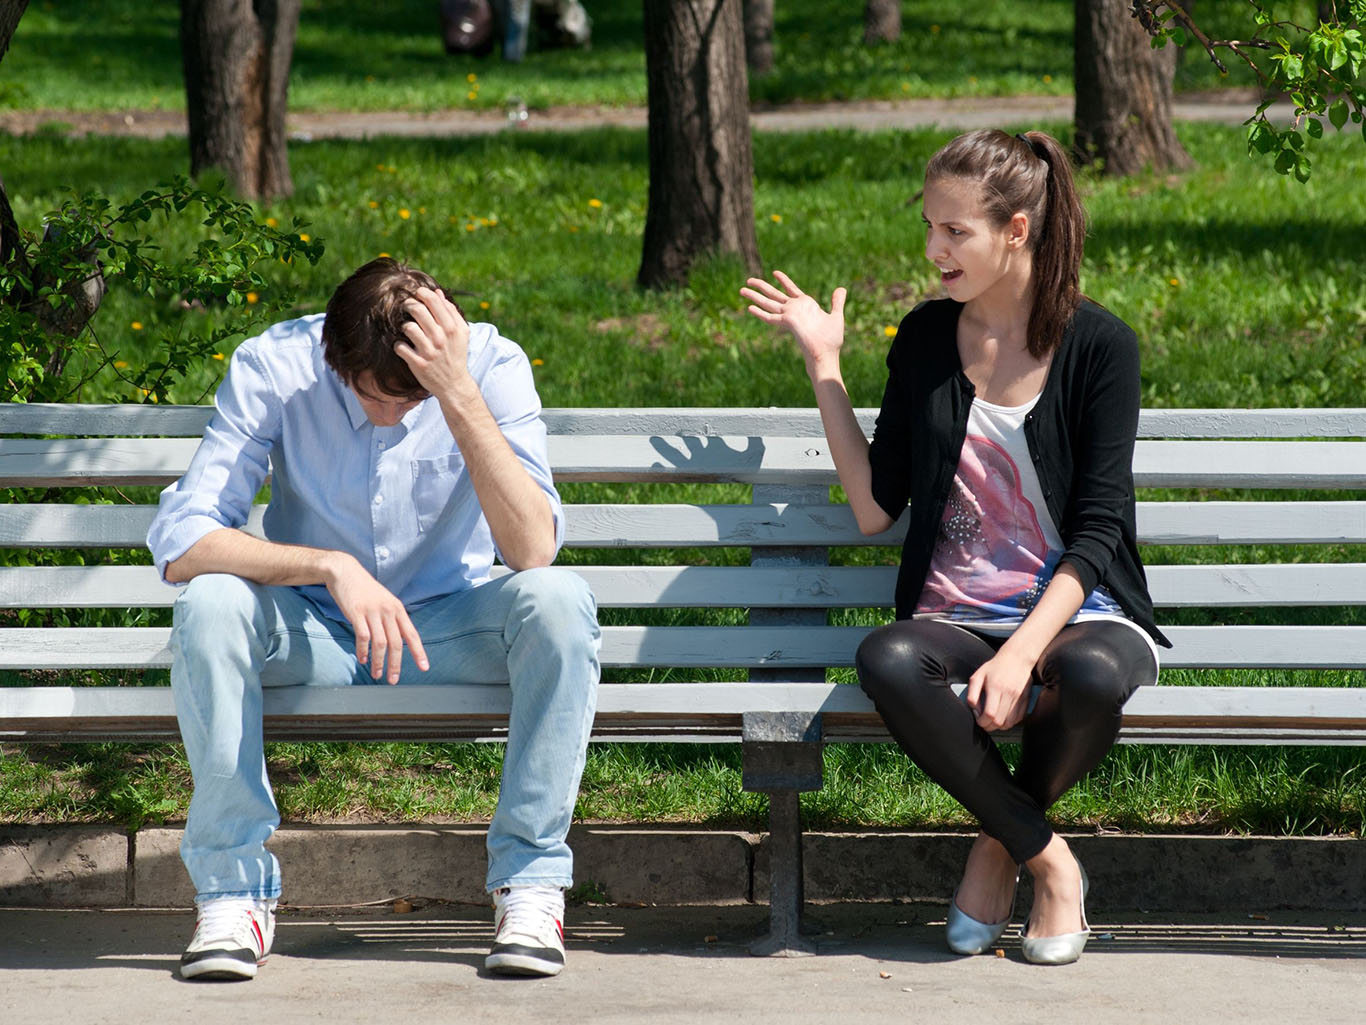 Из-за чего любой мужчина может стать неуверенным в своих отношениях или браке? 3 ключевые причины по мнению психологов